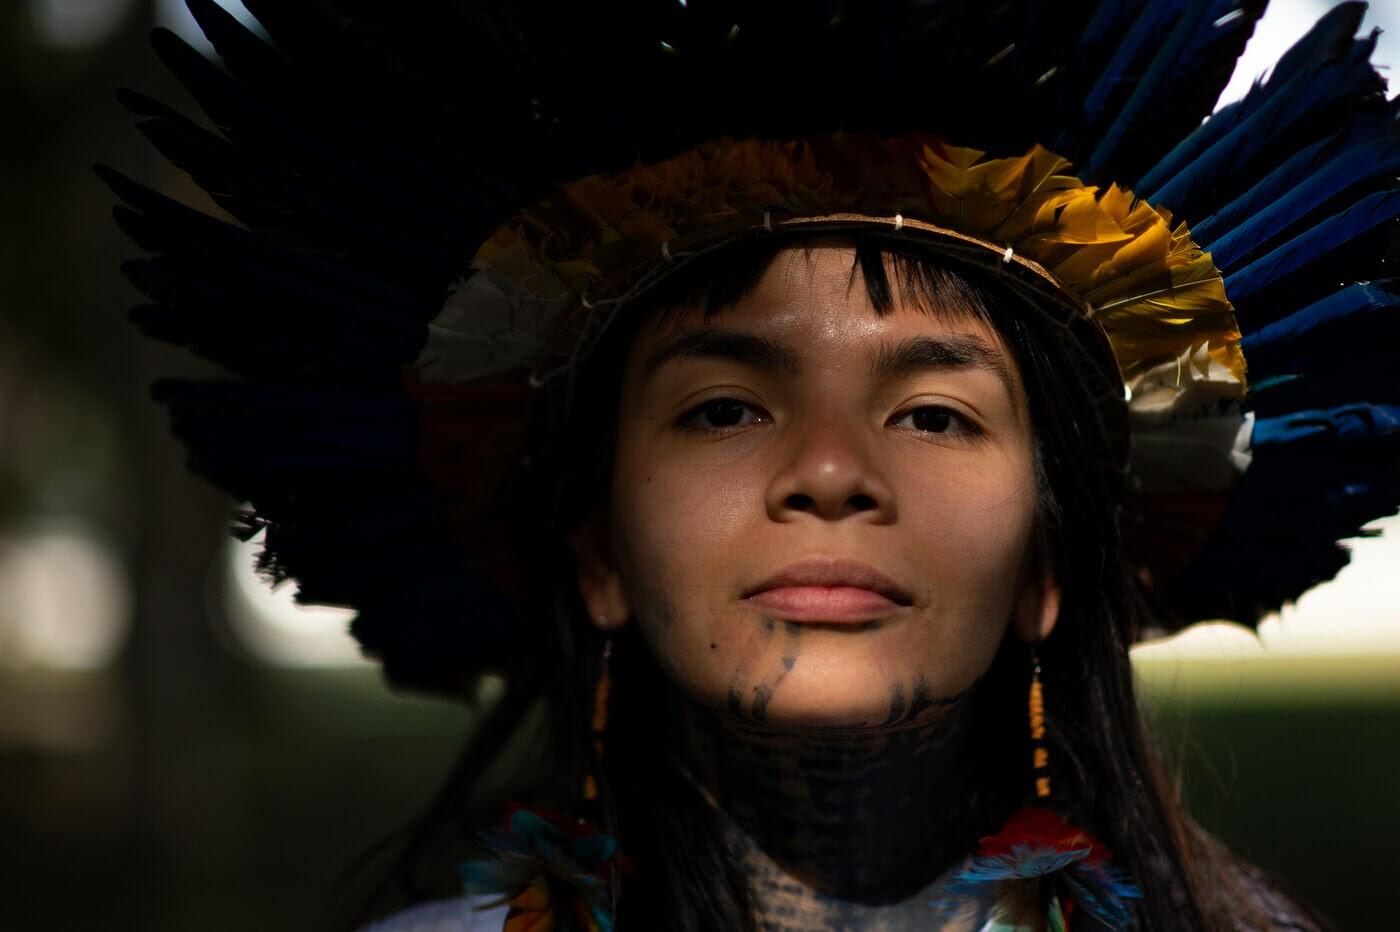 Txai é uma jovem indígena com cabelos e olhos castanhos. Ela usa um cocar na cabeça, brinco de pena nas orelhas e tem pintura étnica no rosto e pescoço